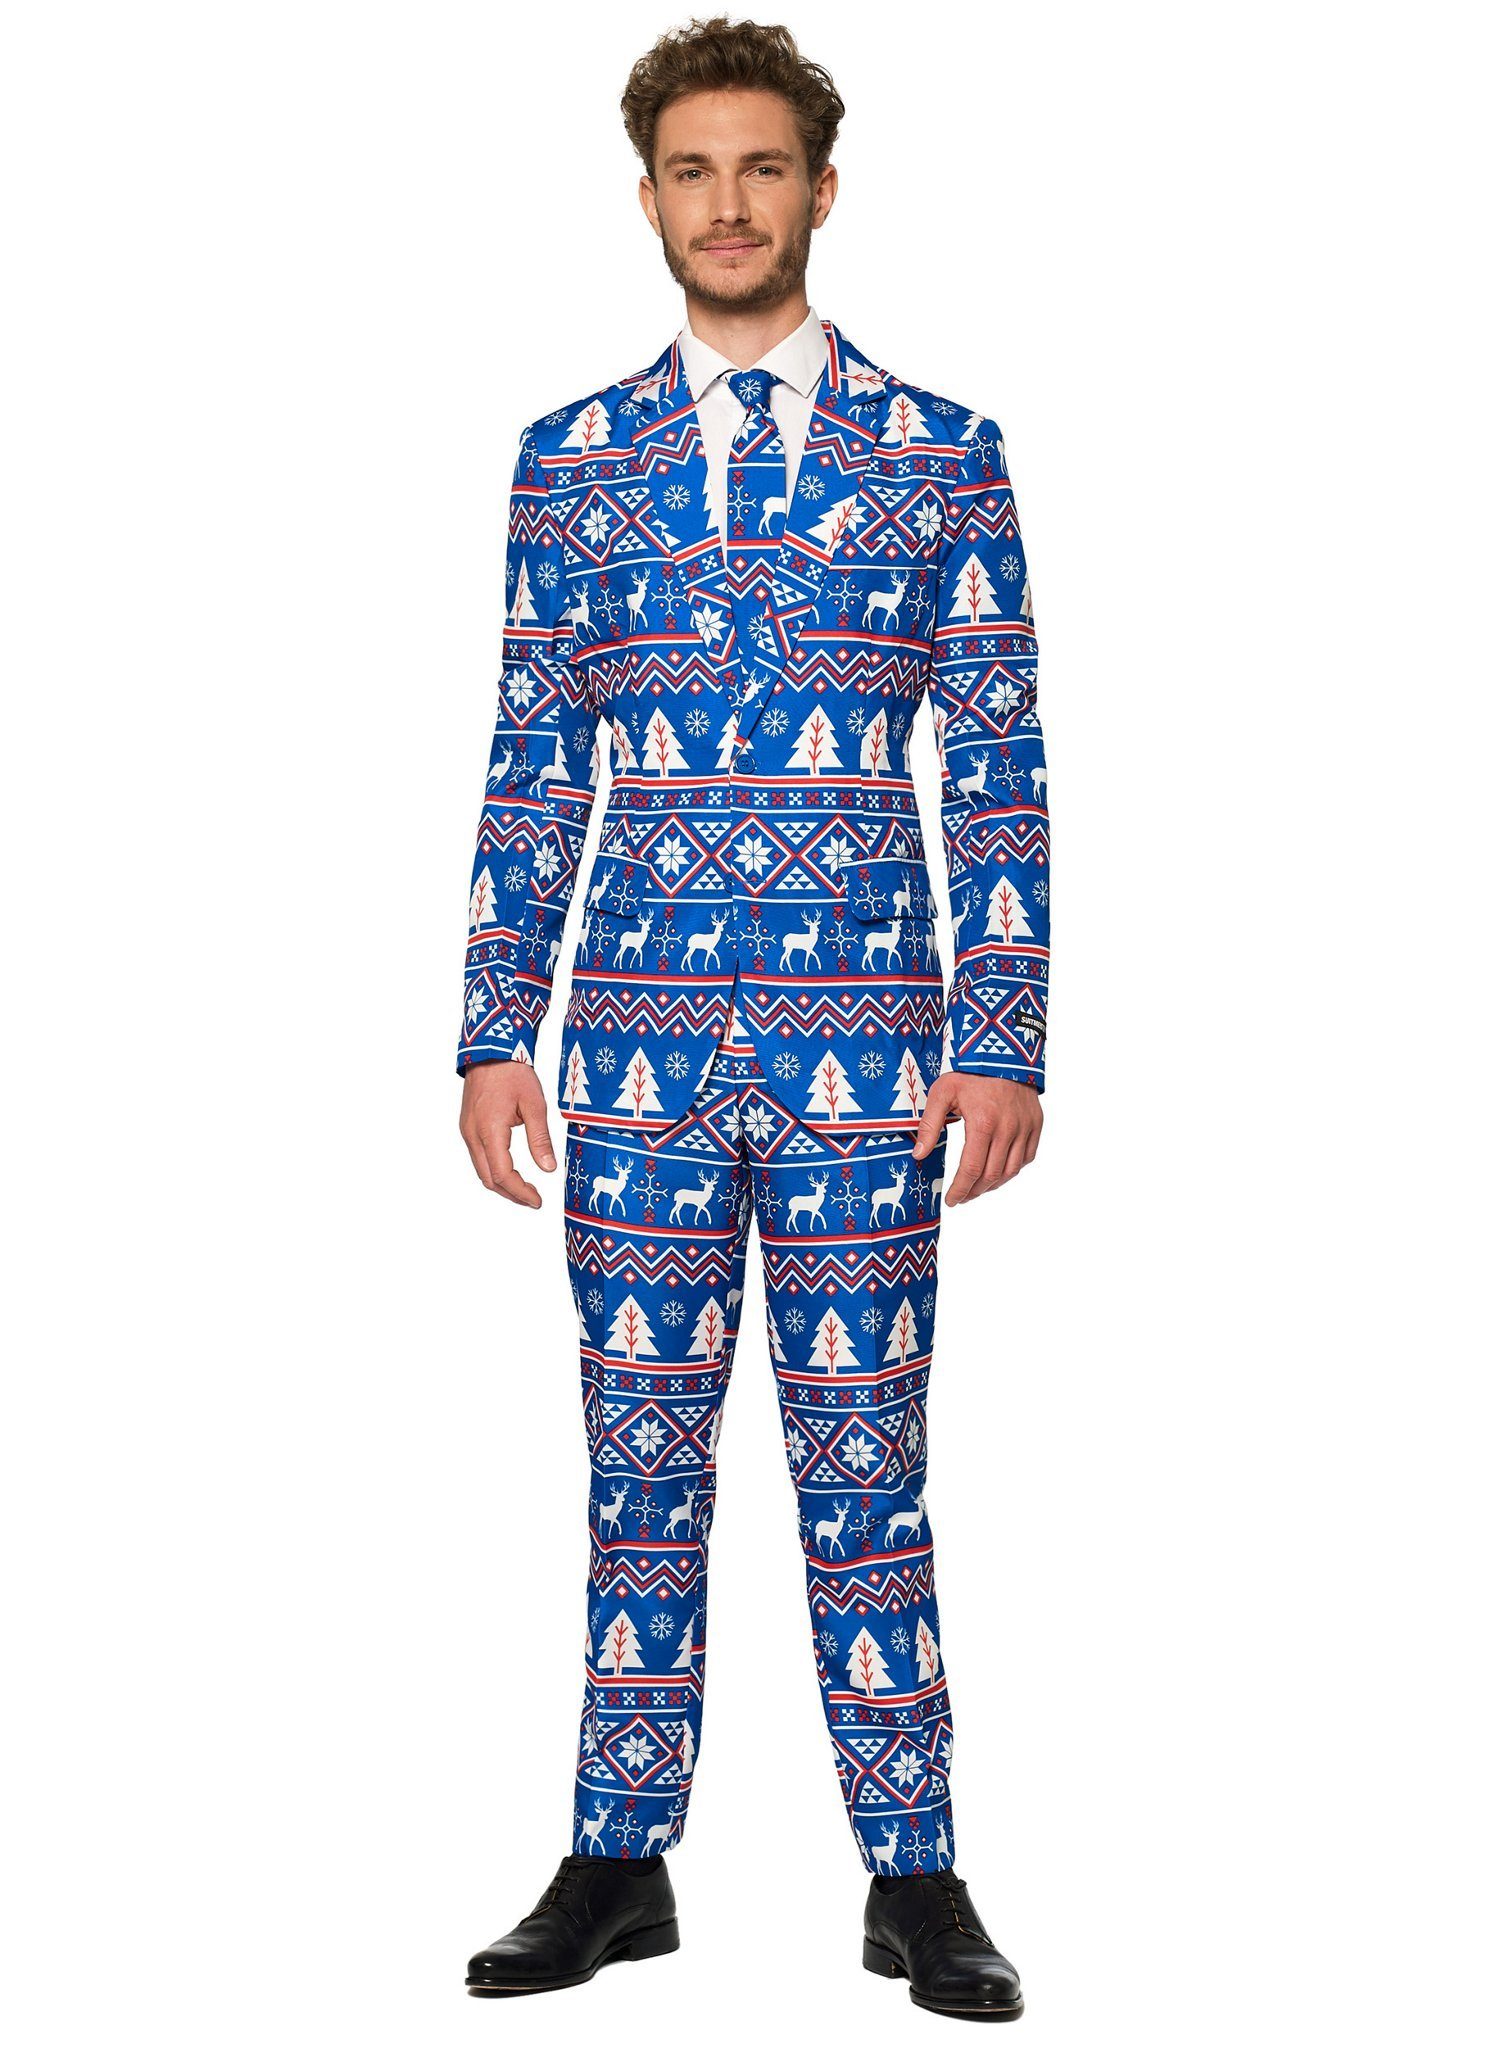 Opposuits Partyanzug SuitMeister Blue Nordic, Für nordische Typen: cooler Anzug für kühle Tage